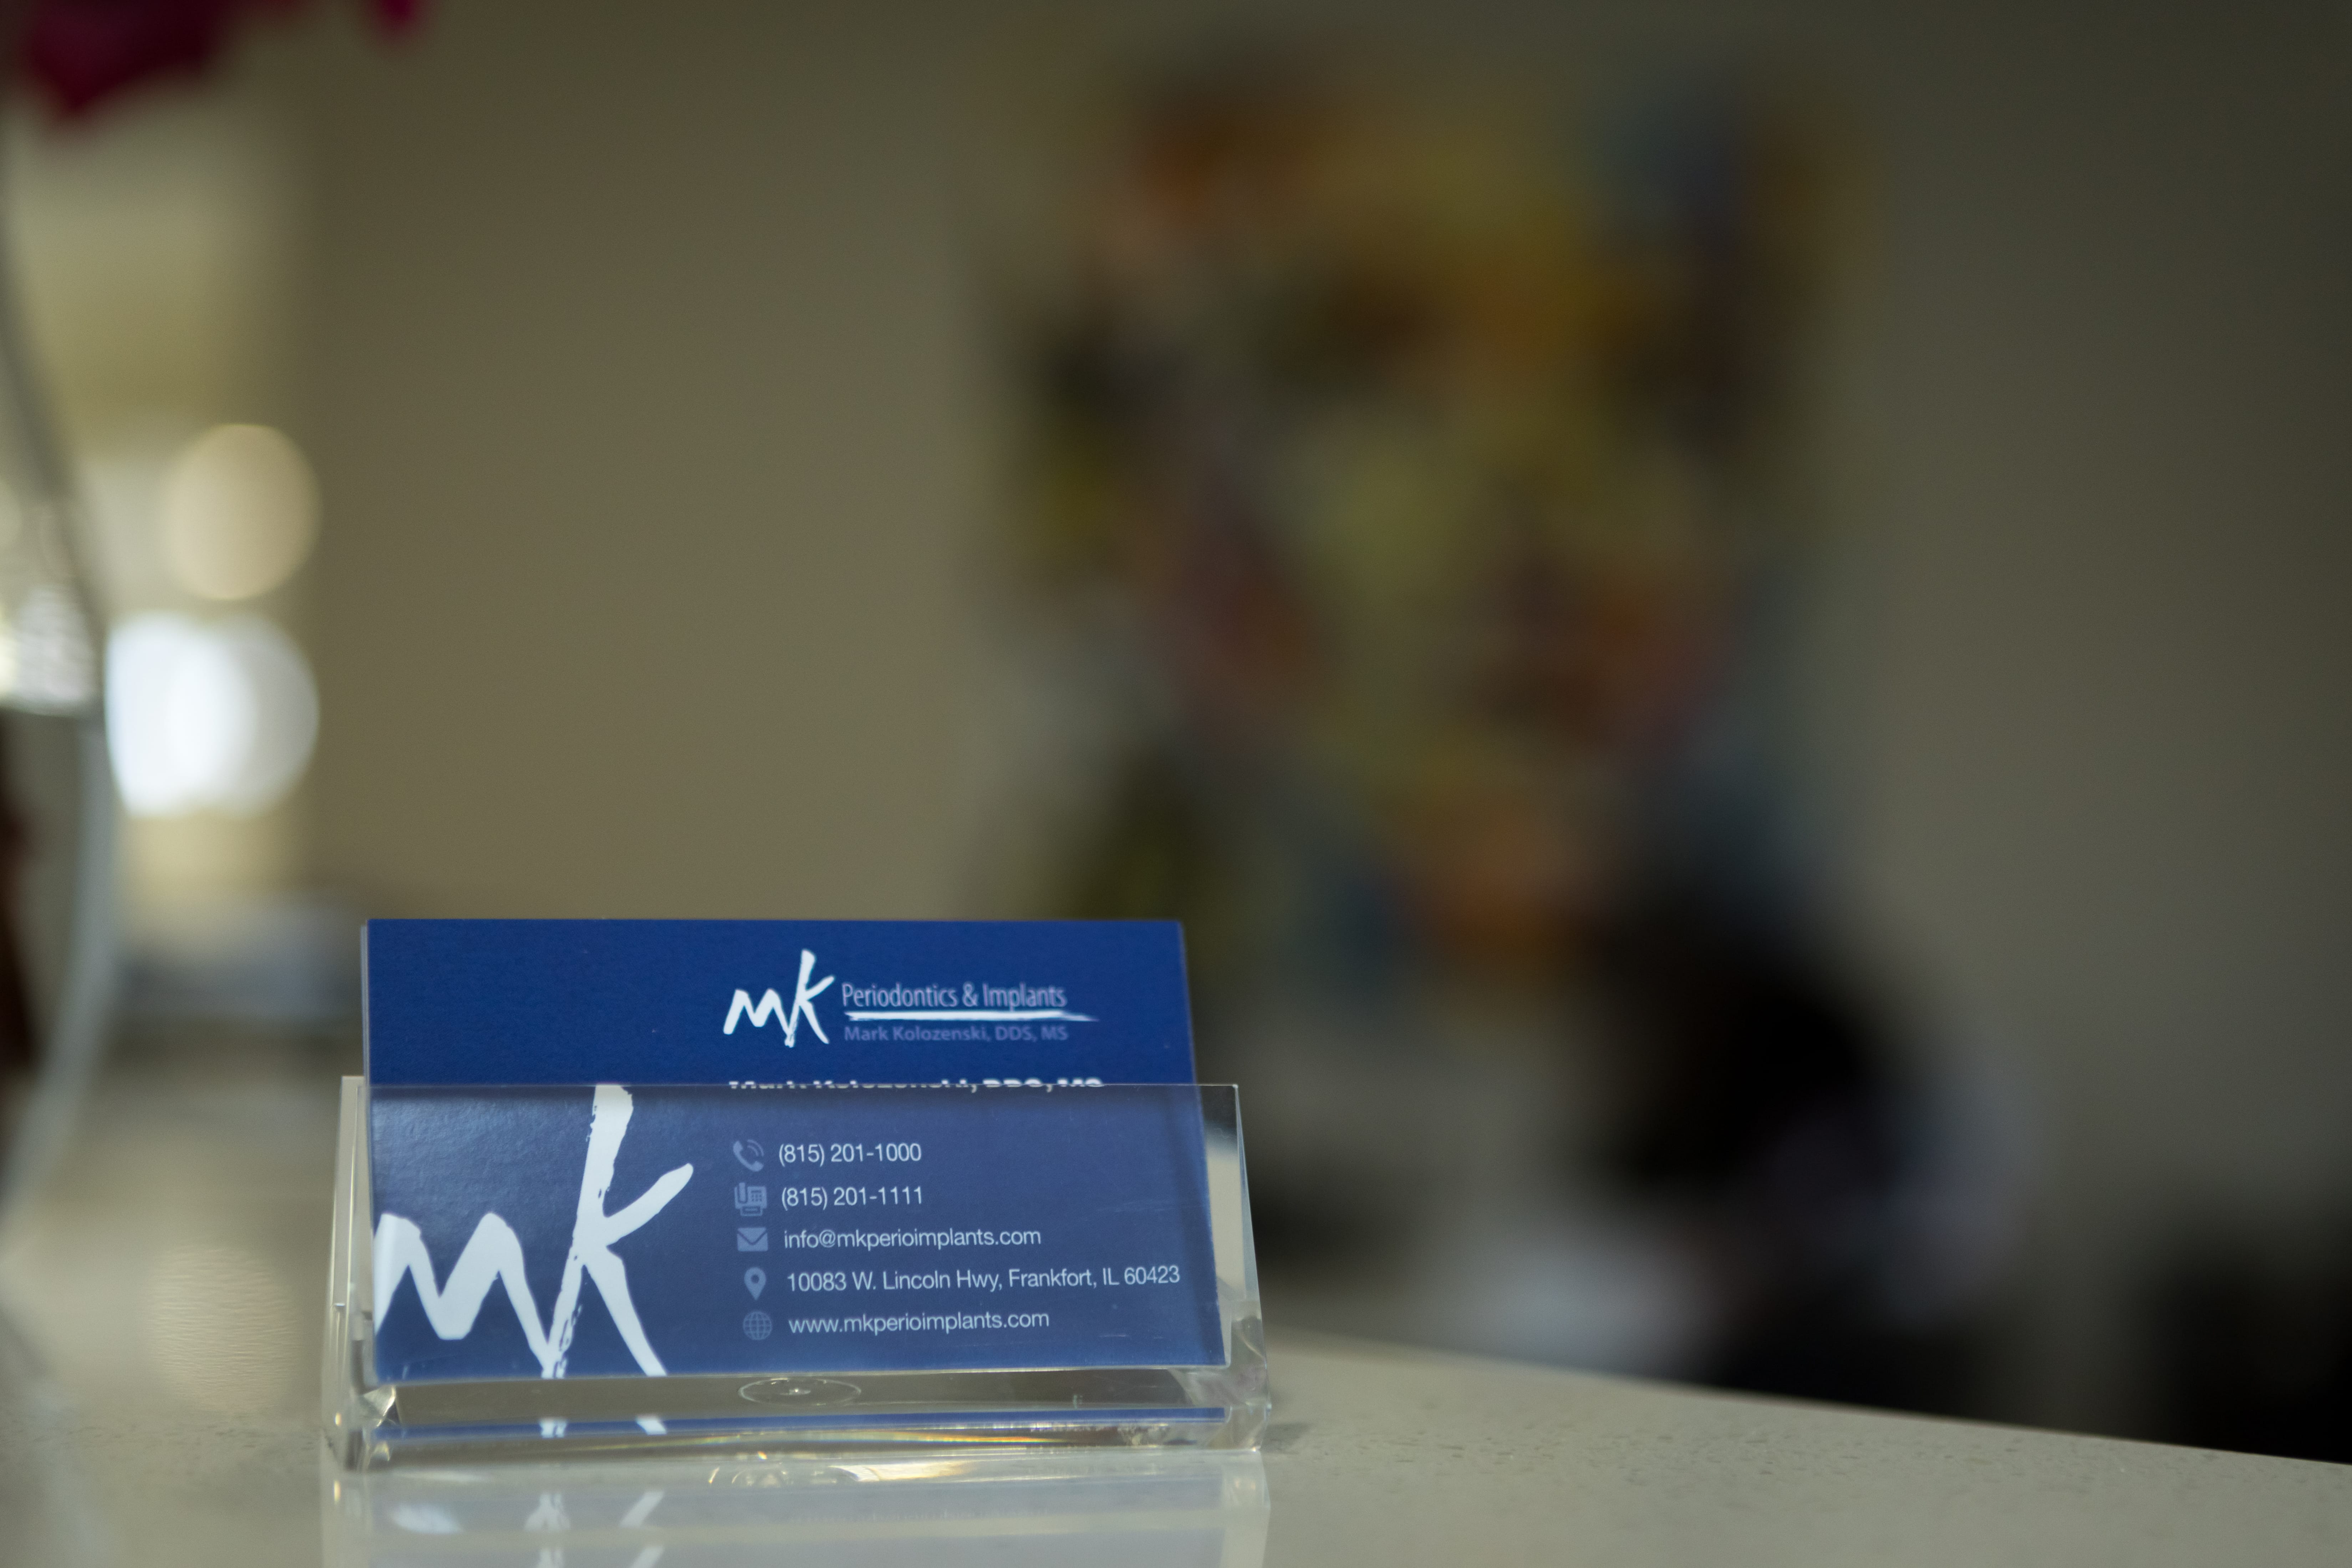 MK Periodontics & Implants